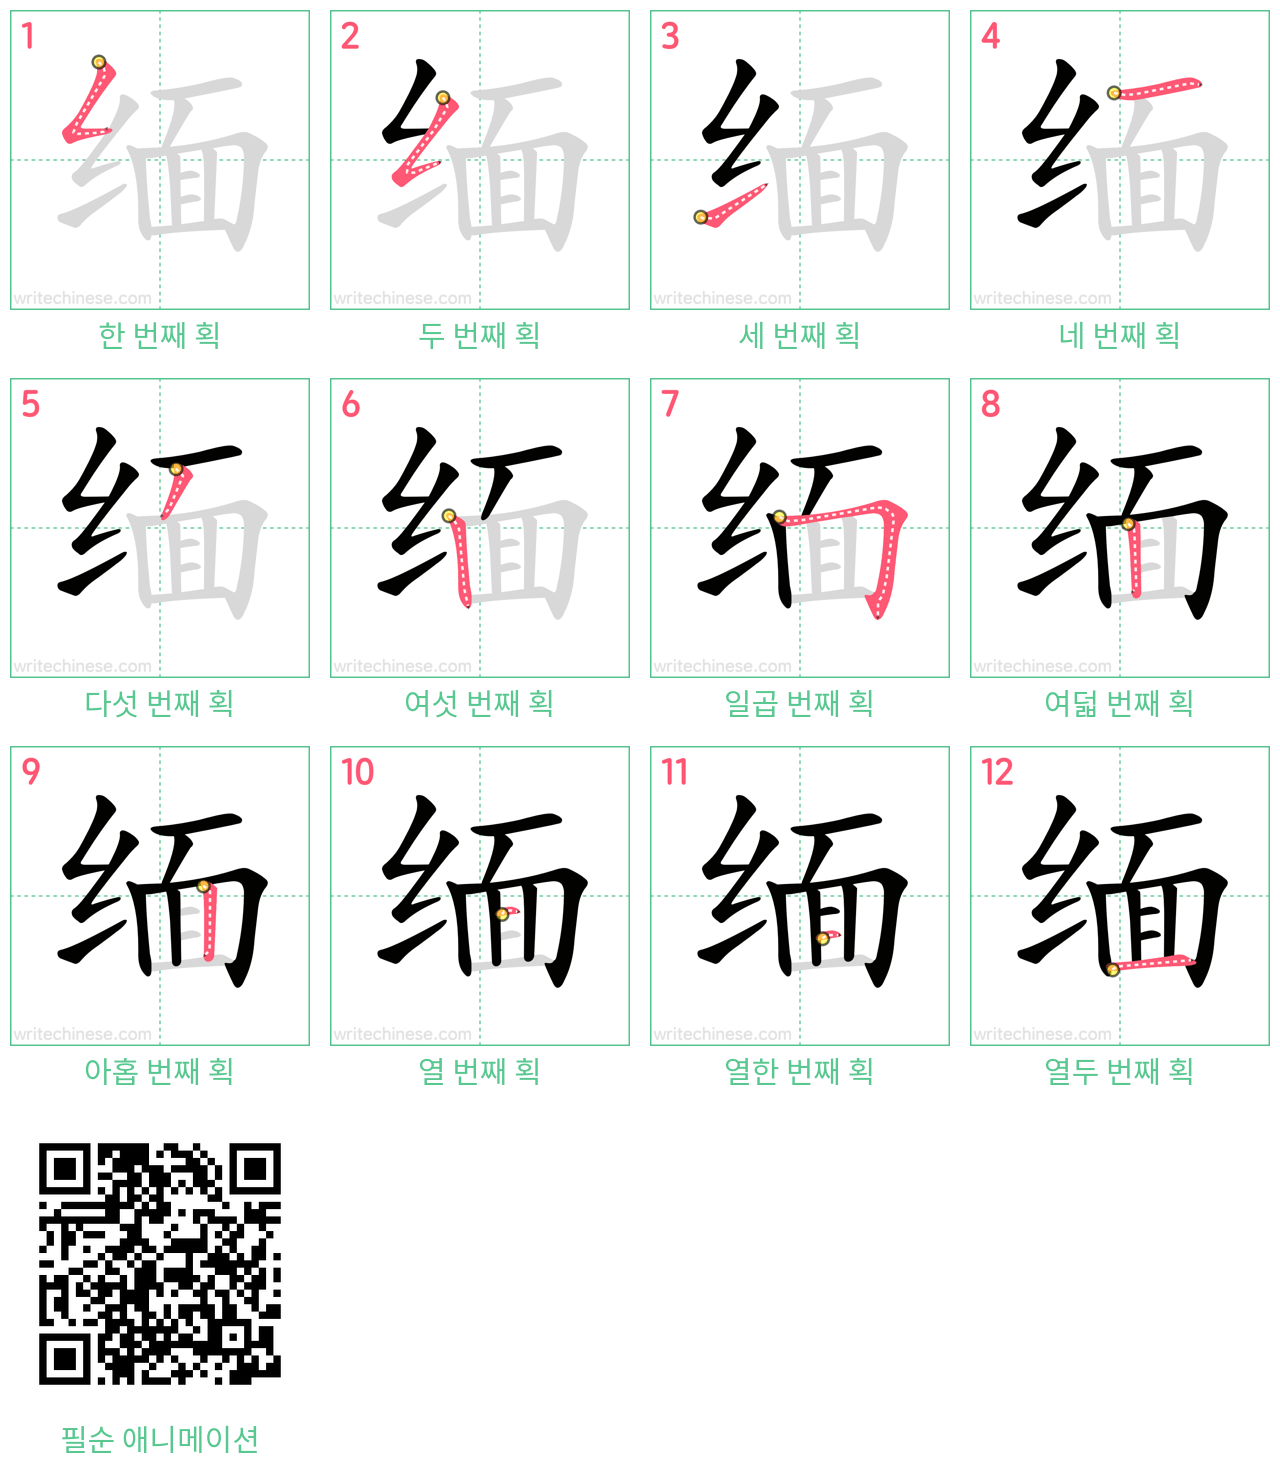 缅 step-by-step stroke order diagrams